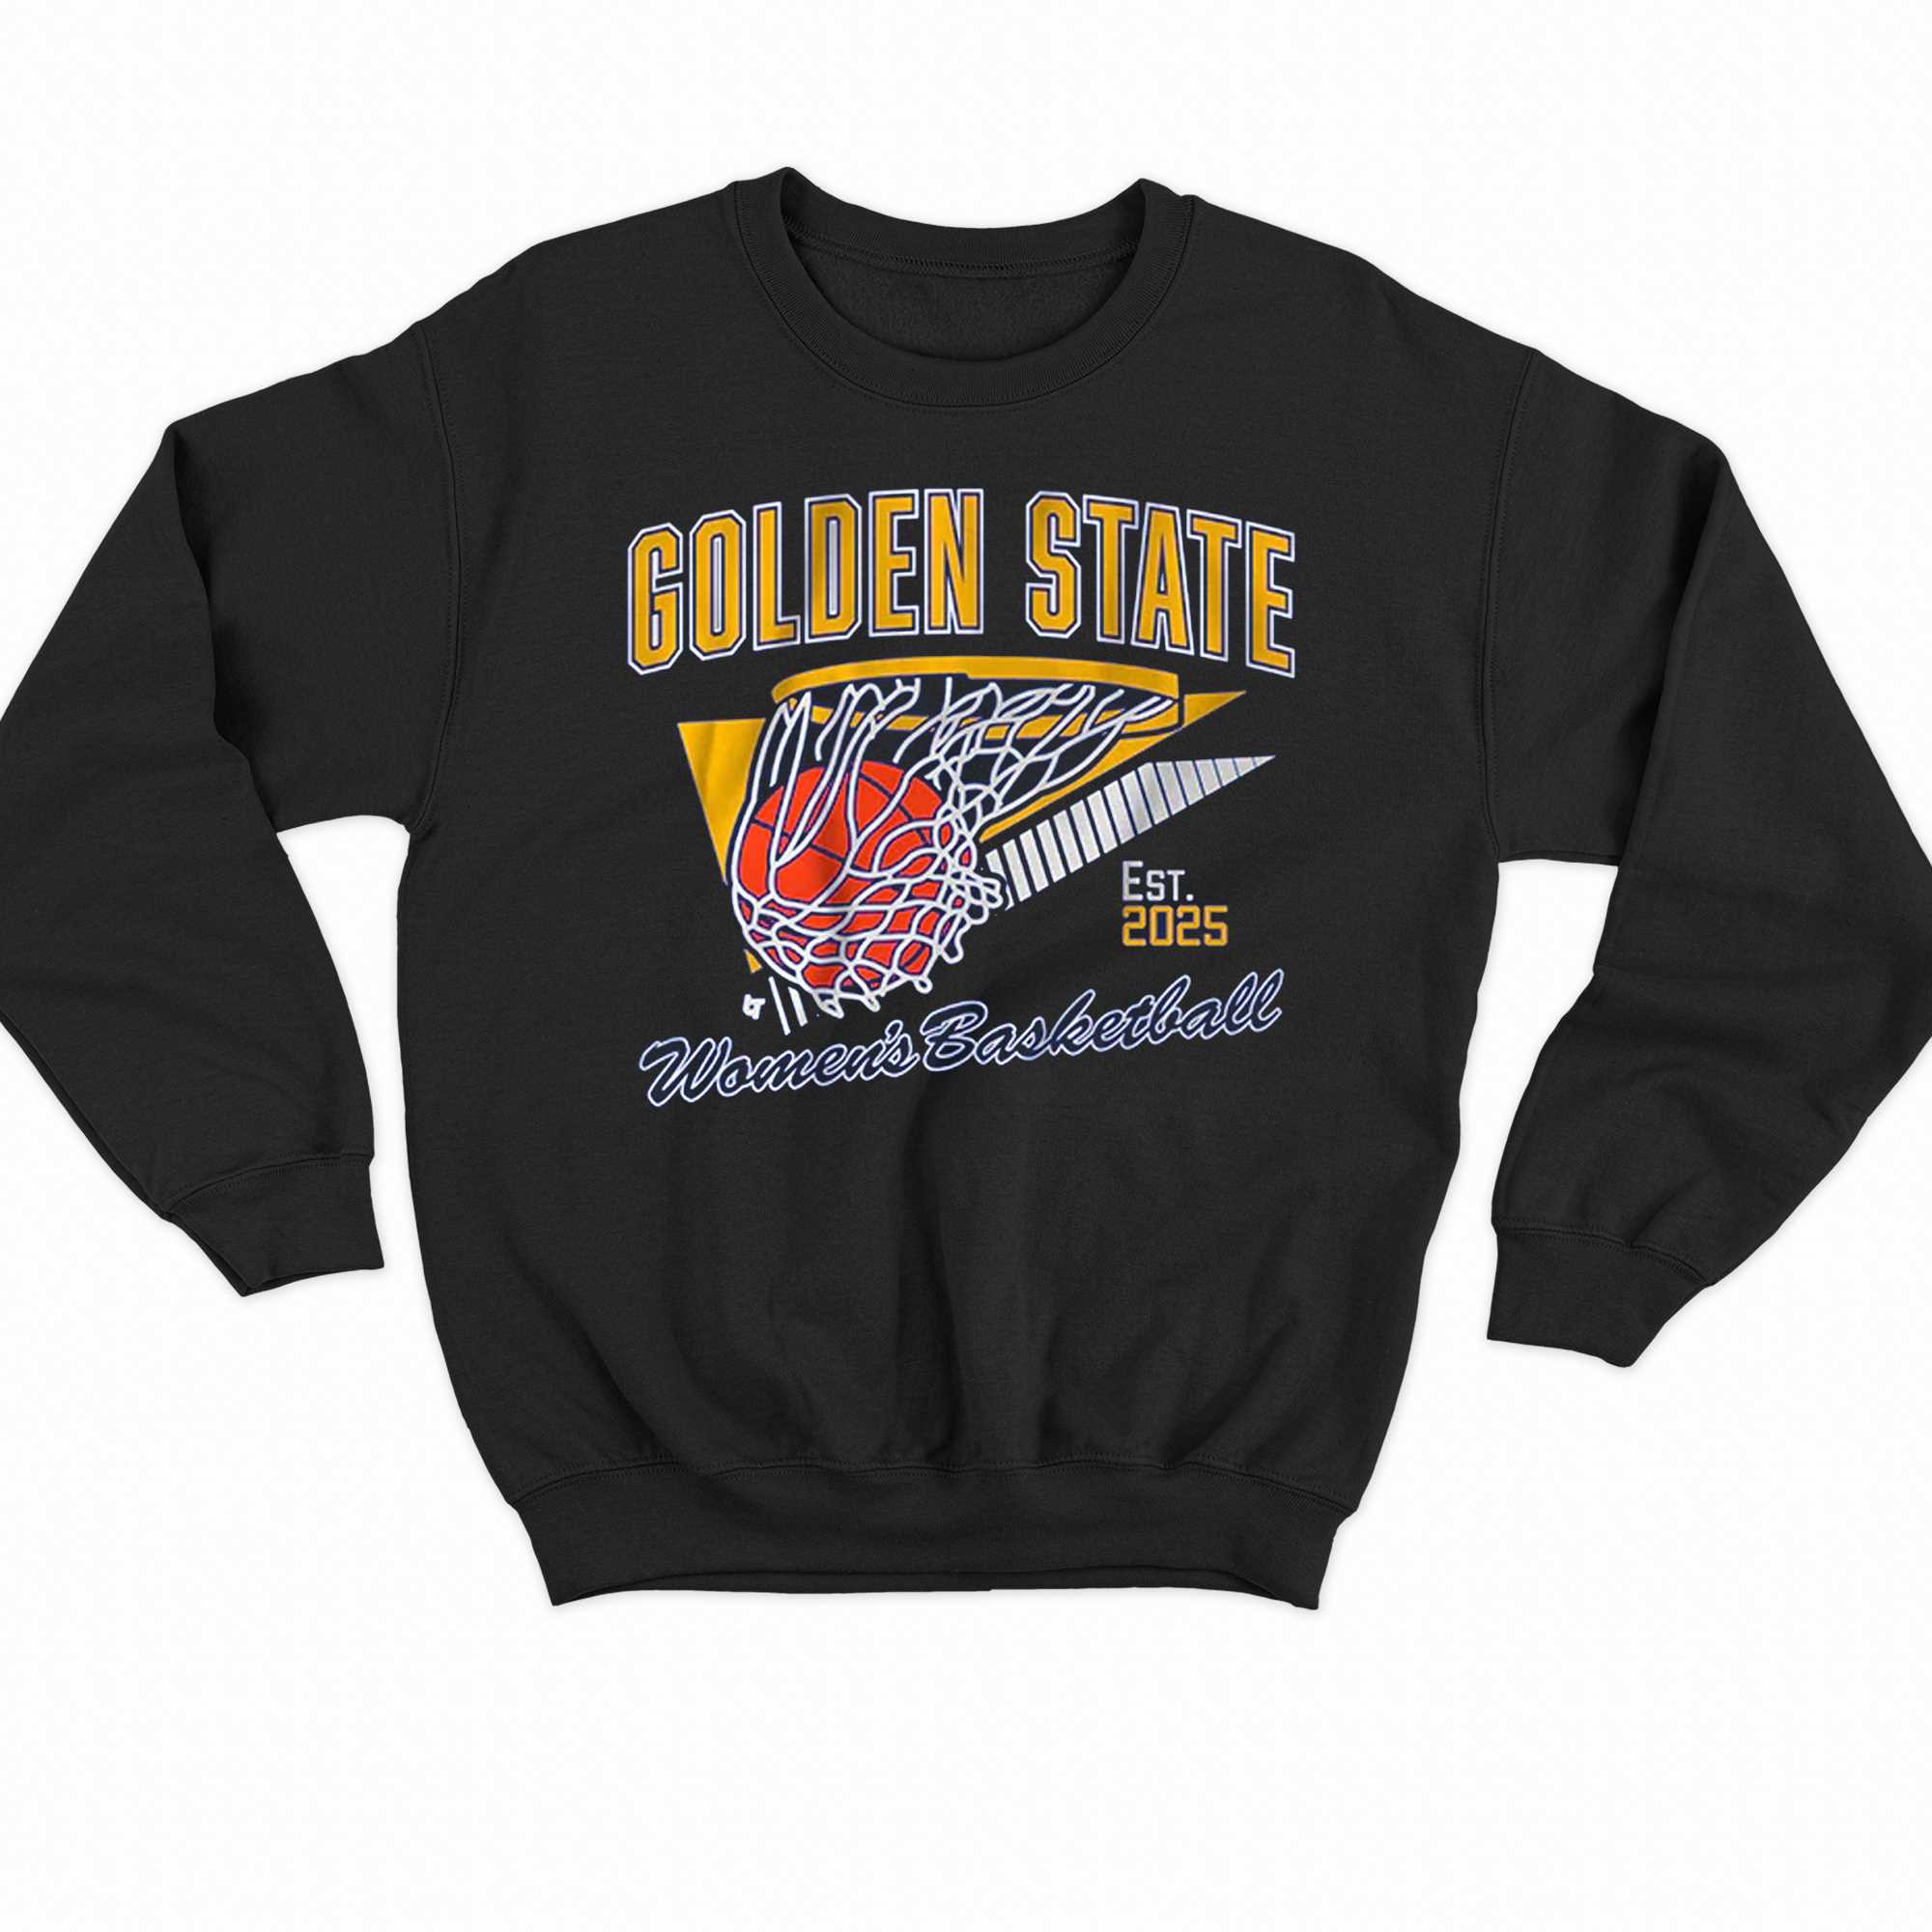 Golden State Warriors Shirt Vintage Crewneck Sweatshirt - Trends